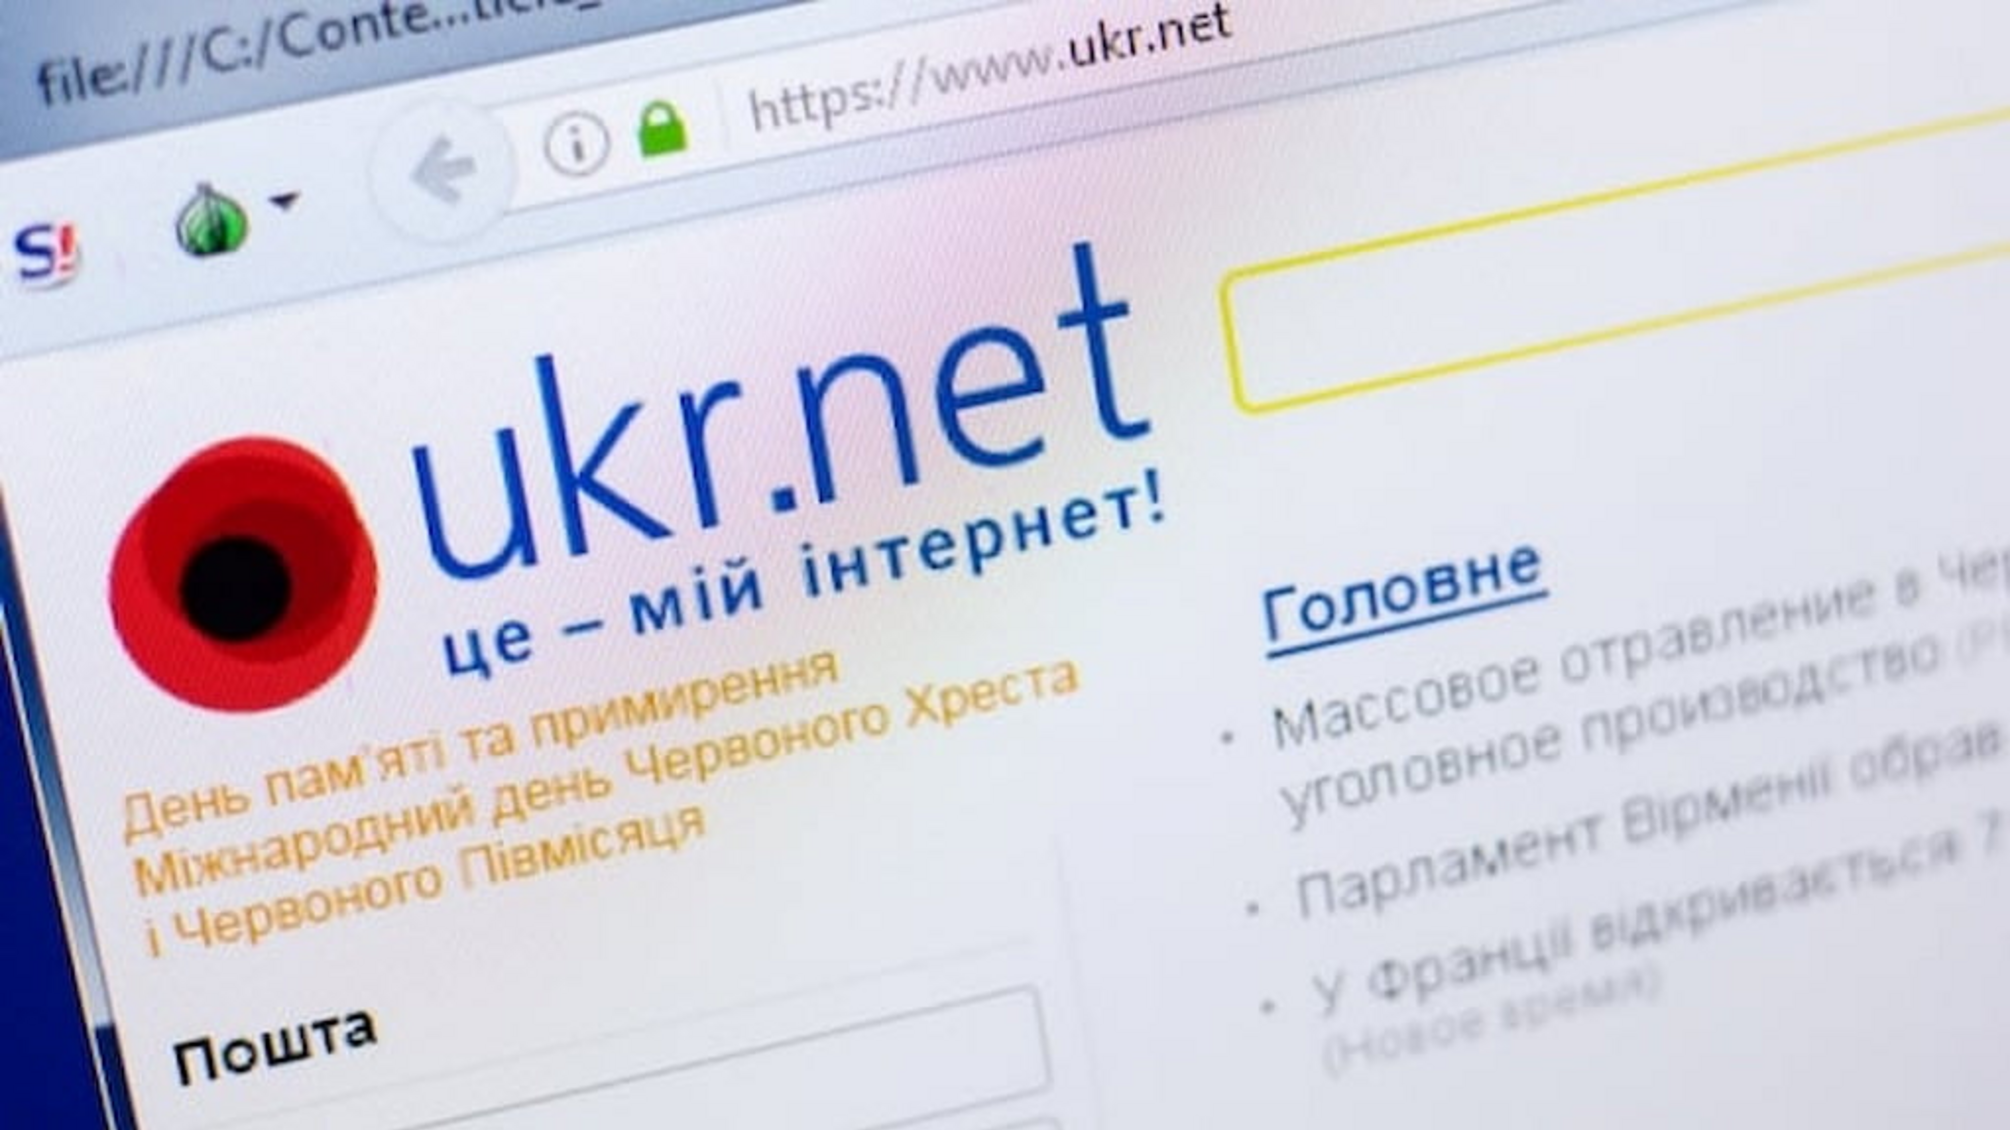 Домен портала Ukr.net заблокирован: коммерческий директор компании Роман Скрипник объяснил, что произошло